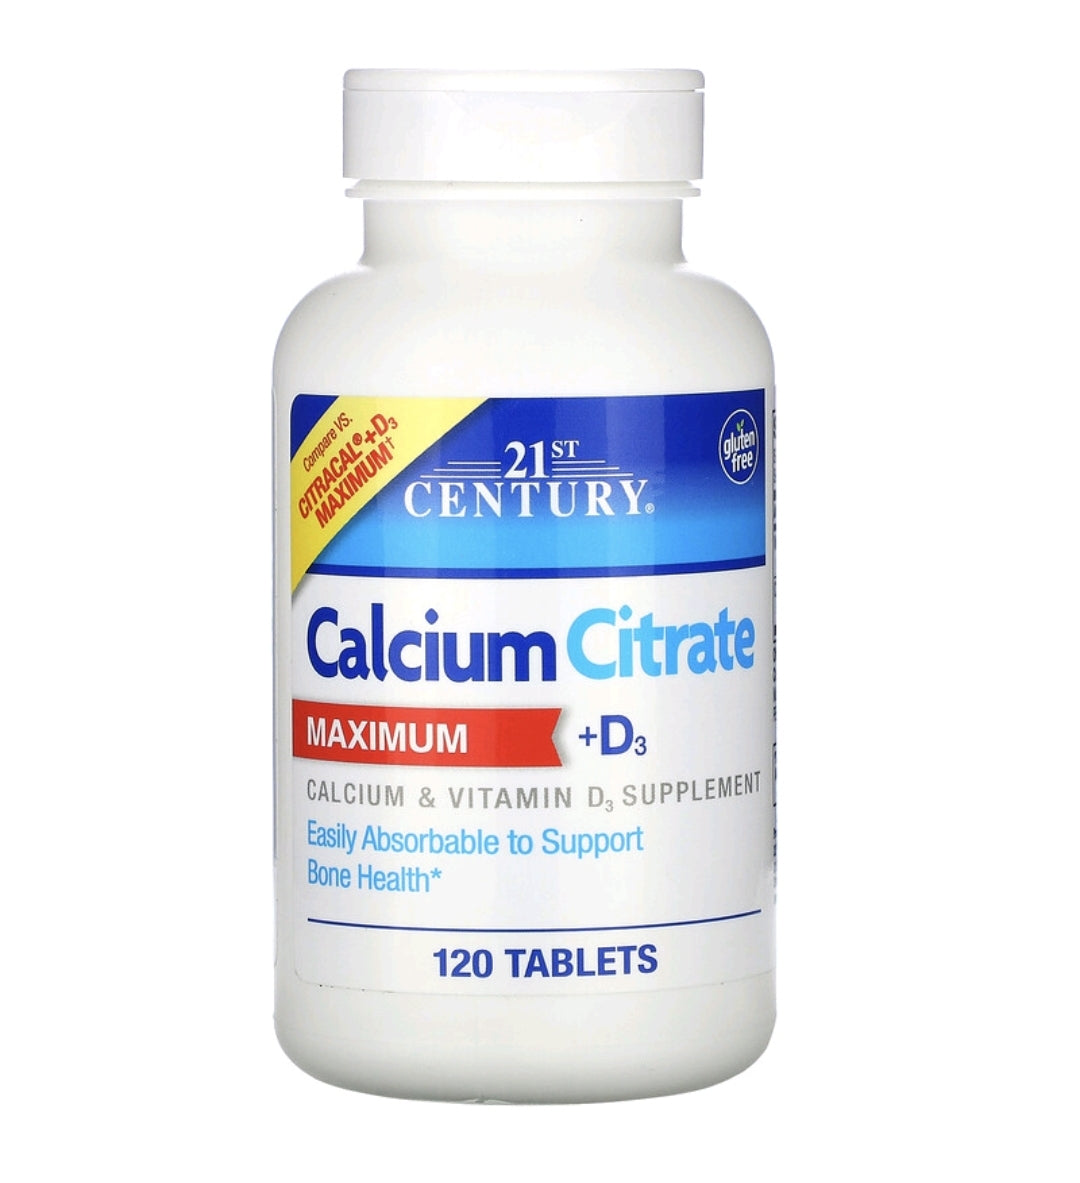 Calcium Citrate Maximum 630mg + D3 500IU , 120 Tablets